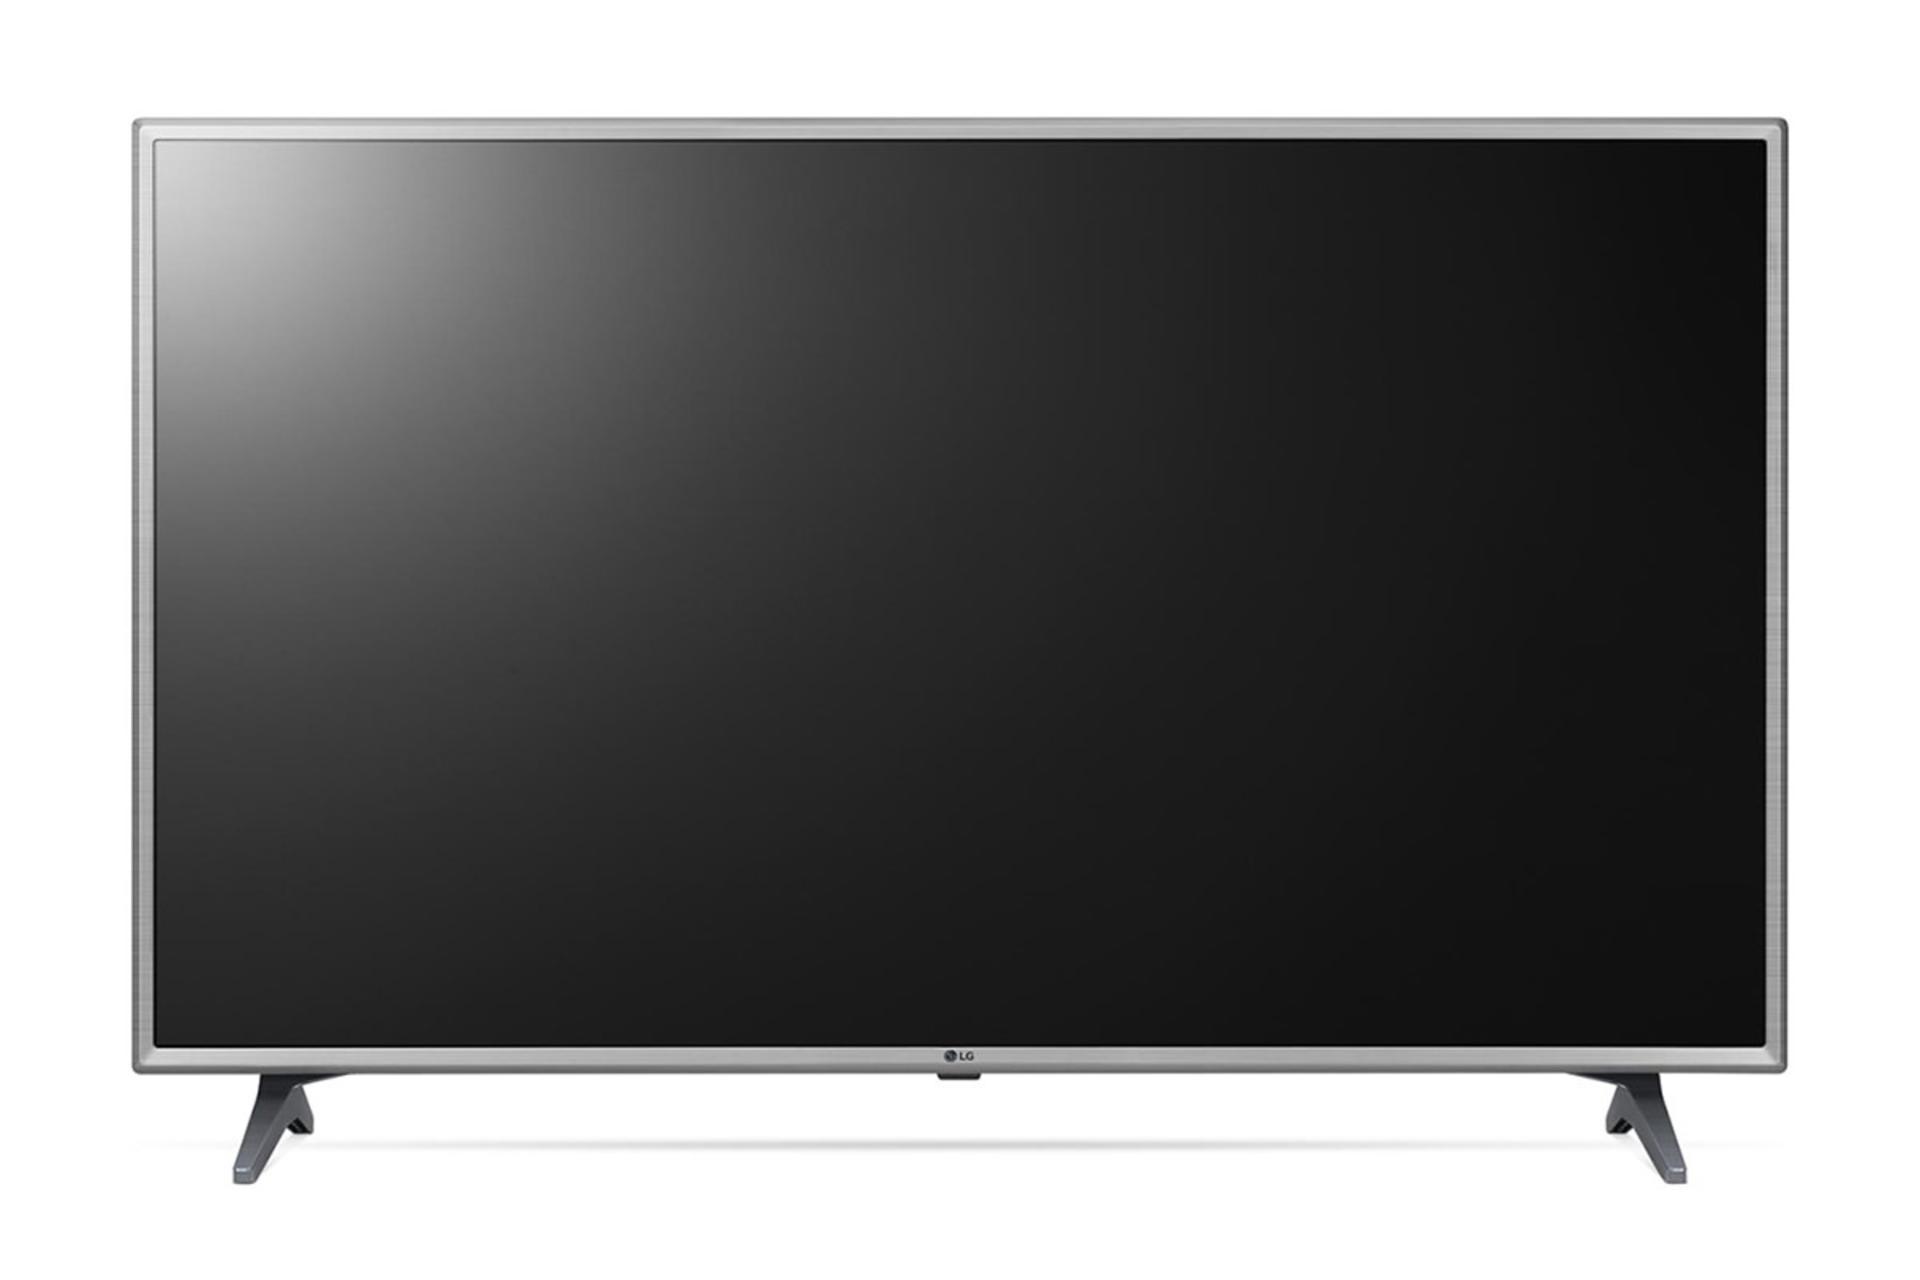  نمای جلوی تلویزیون ال جی LK6300 مدل 43 اینچ با رنگ نقره ای و صفحه خاموش